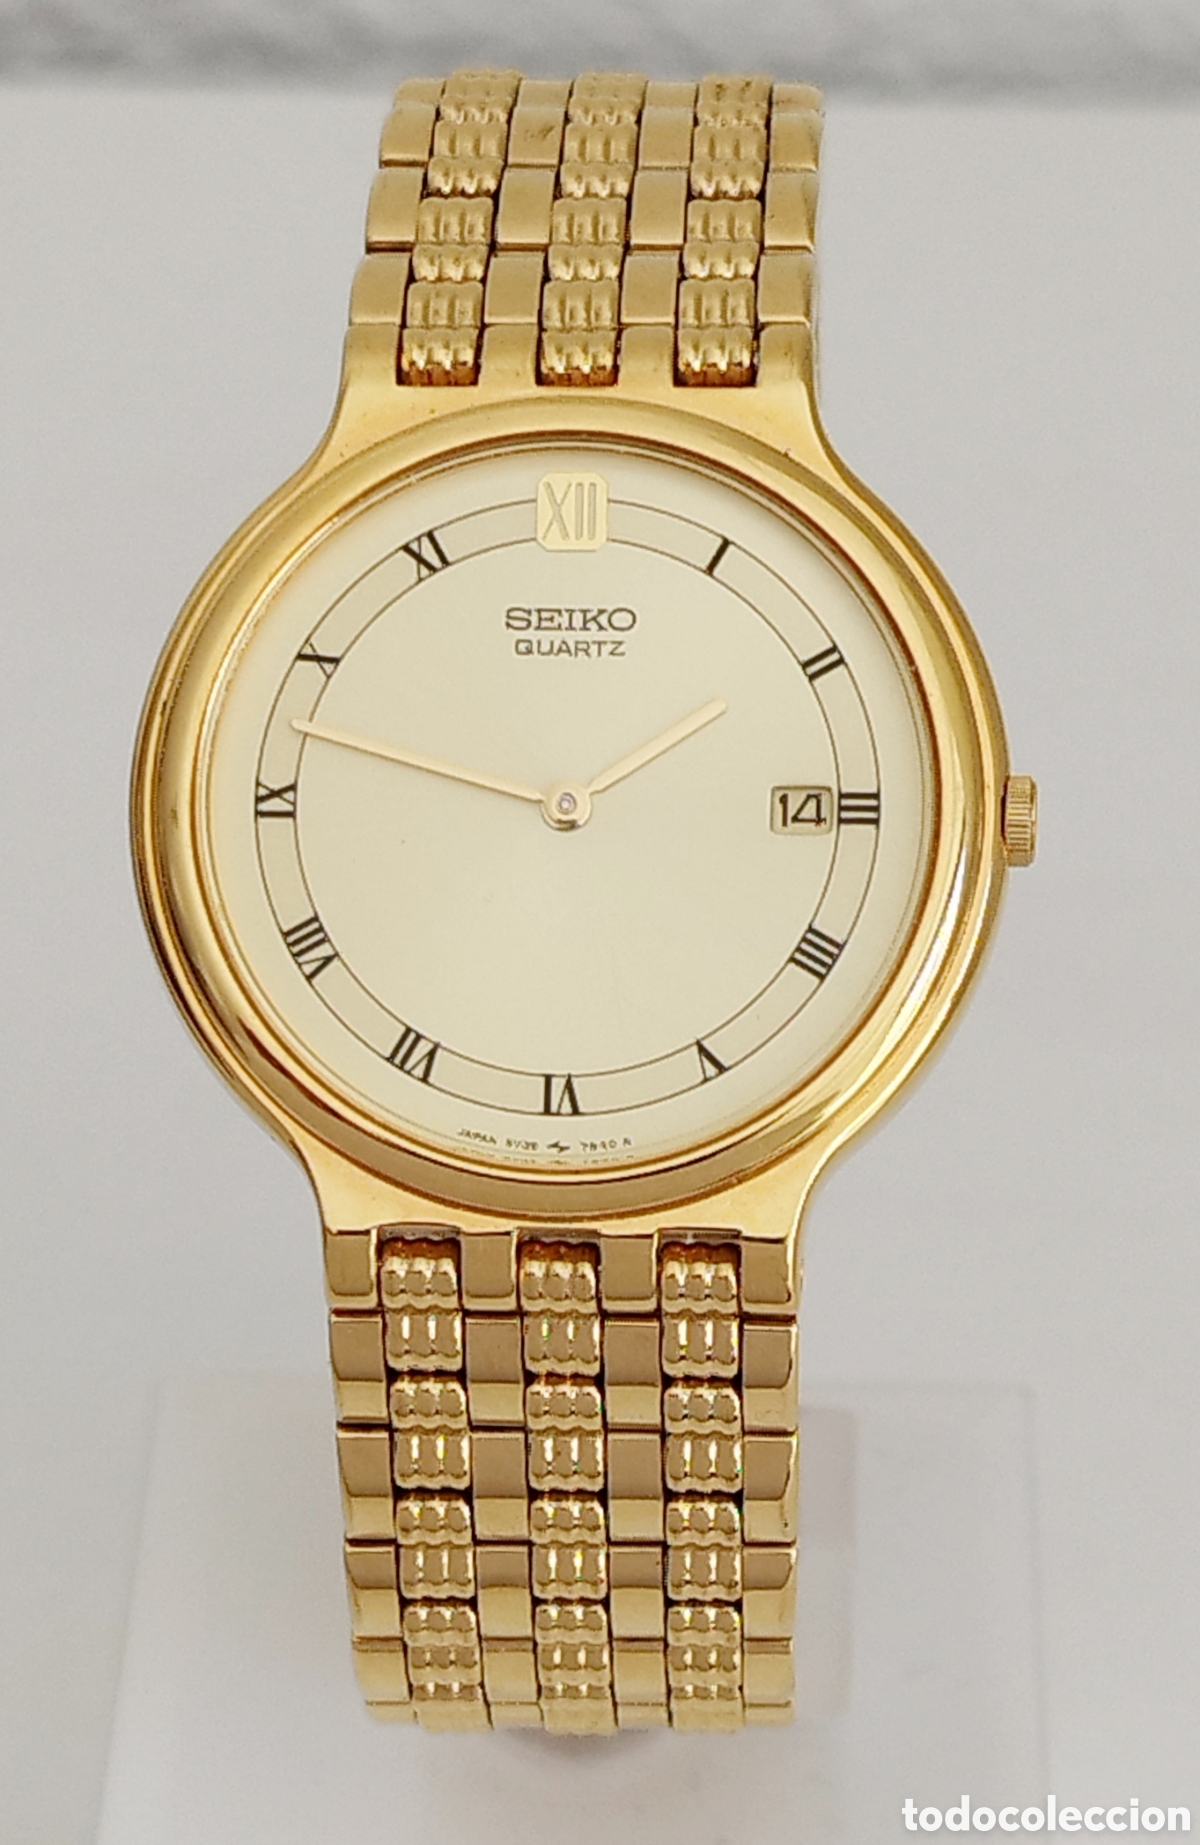 reloj seiko 5y39-7a70 japan color oro - Buy Seiko watches on todocoleccion